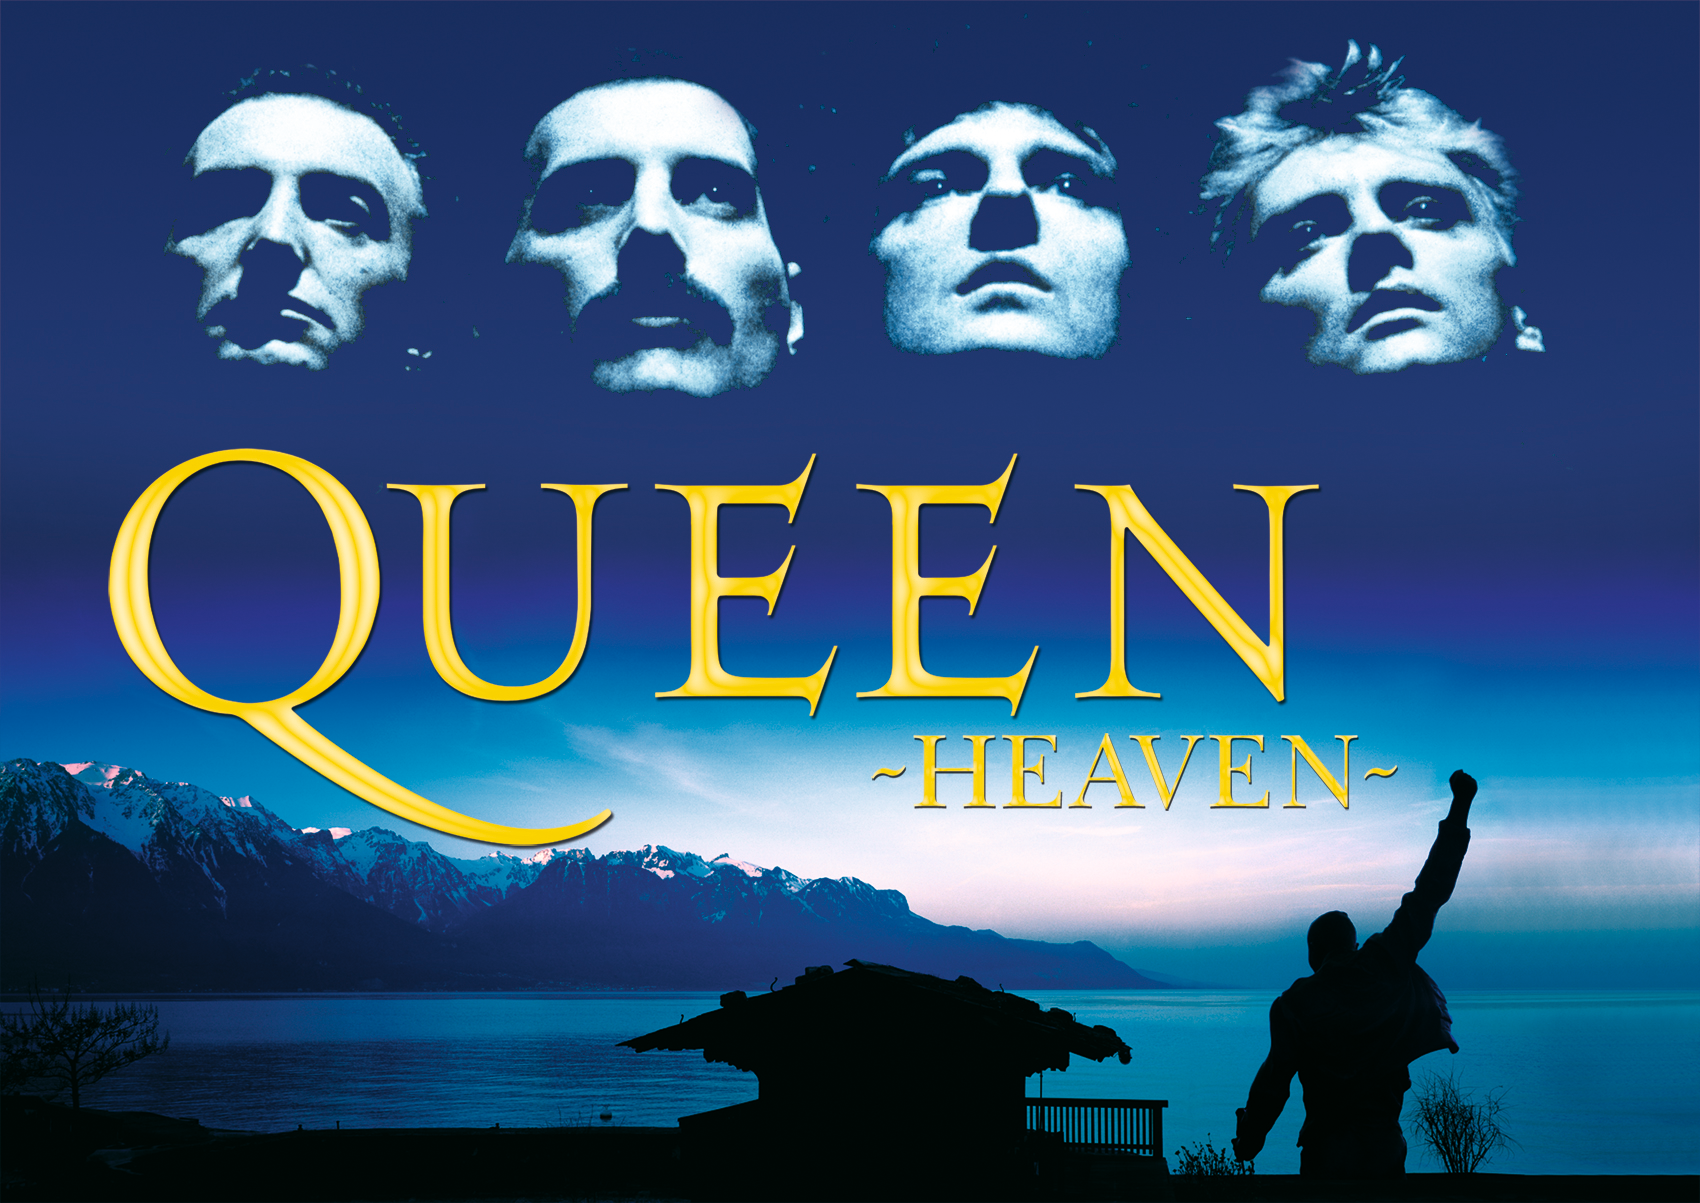 プラネタリウムでロックバンド「クイーン」の世界を体験！
全天周映像作品『QUEEN -HEAVEN-』　
宗像ユリックスプラネタリウムで9月～12月 全15回上映決定